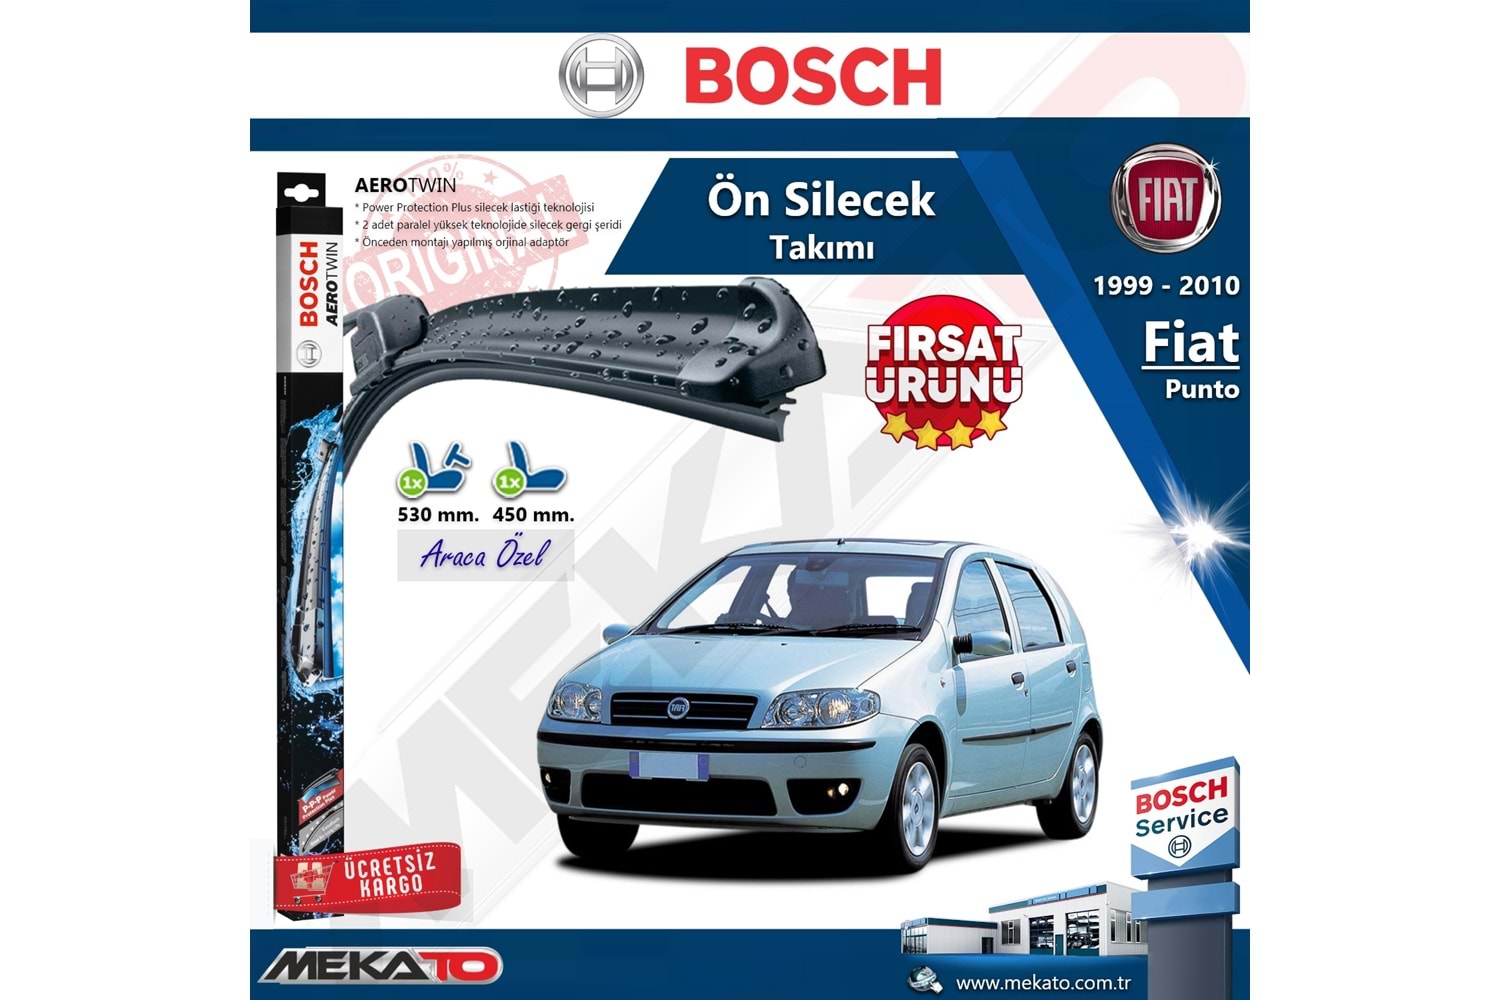 Fiat Punto Ön Silecek Takımı Bosch Aero Eco 1999-2010